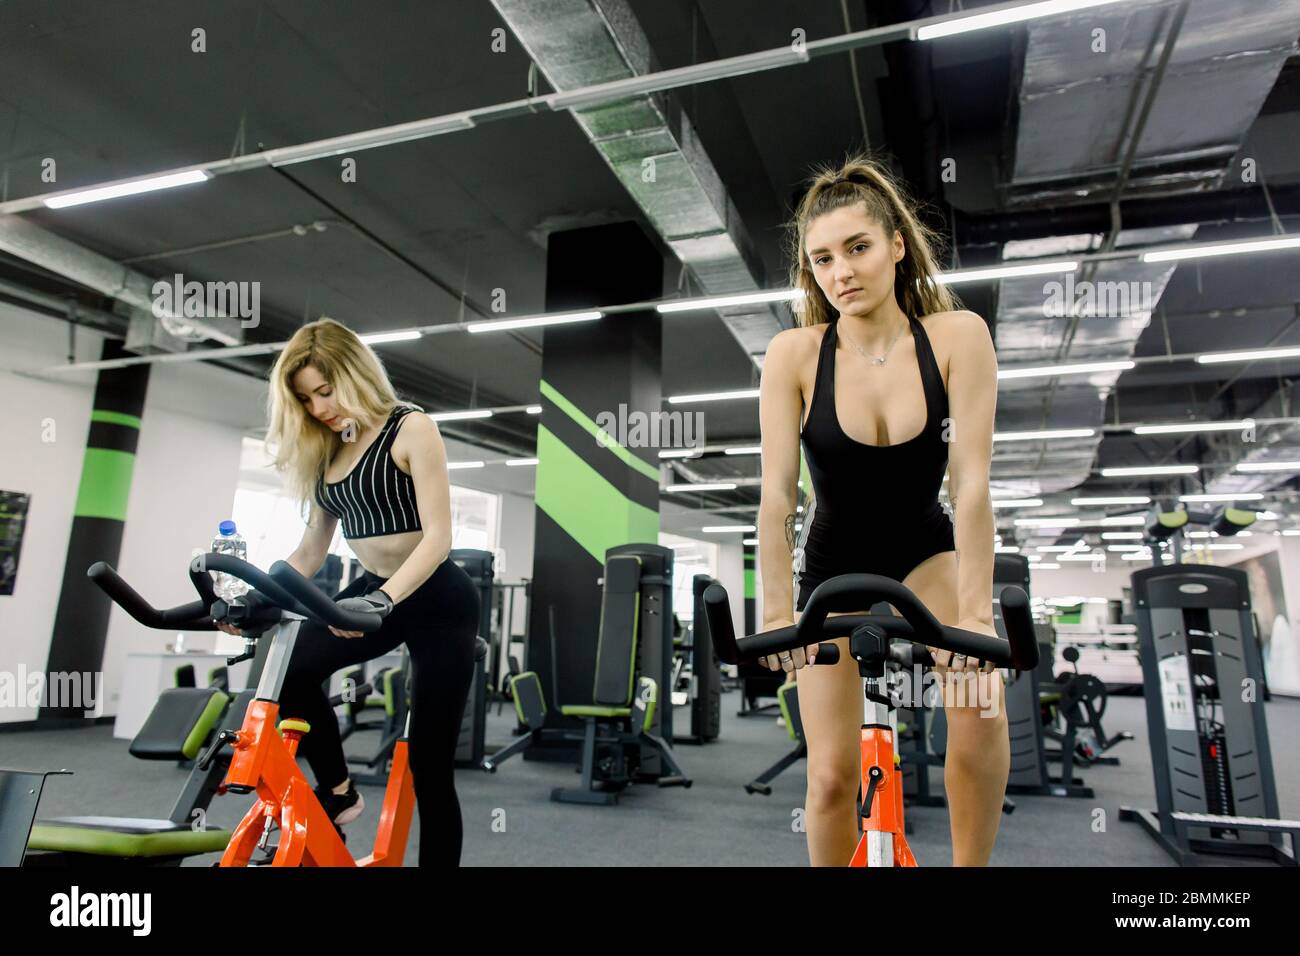 Vista completa de dos chicas jóvenes deportiva haciendo girar en un gimnasio vacío. Dos mujeres haciendo ejercicio en bicicleta en el gimnasio Fotografía de -